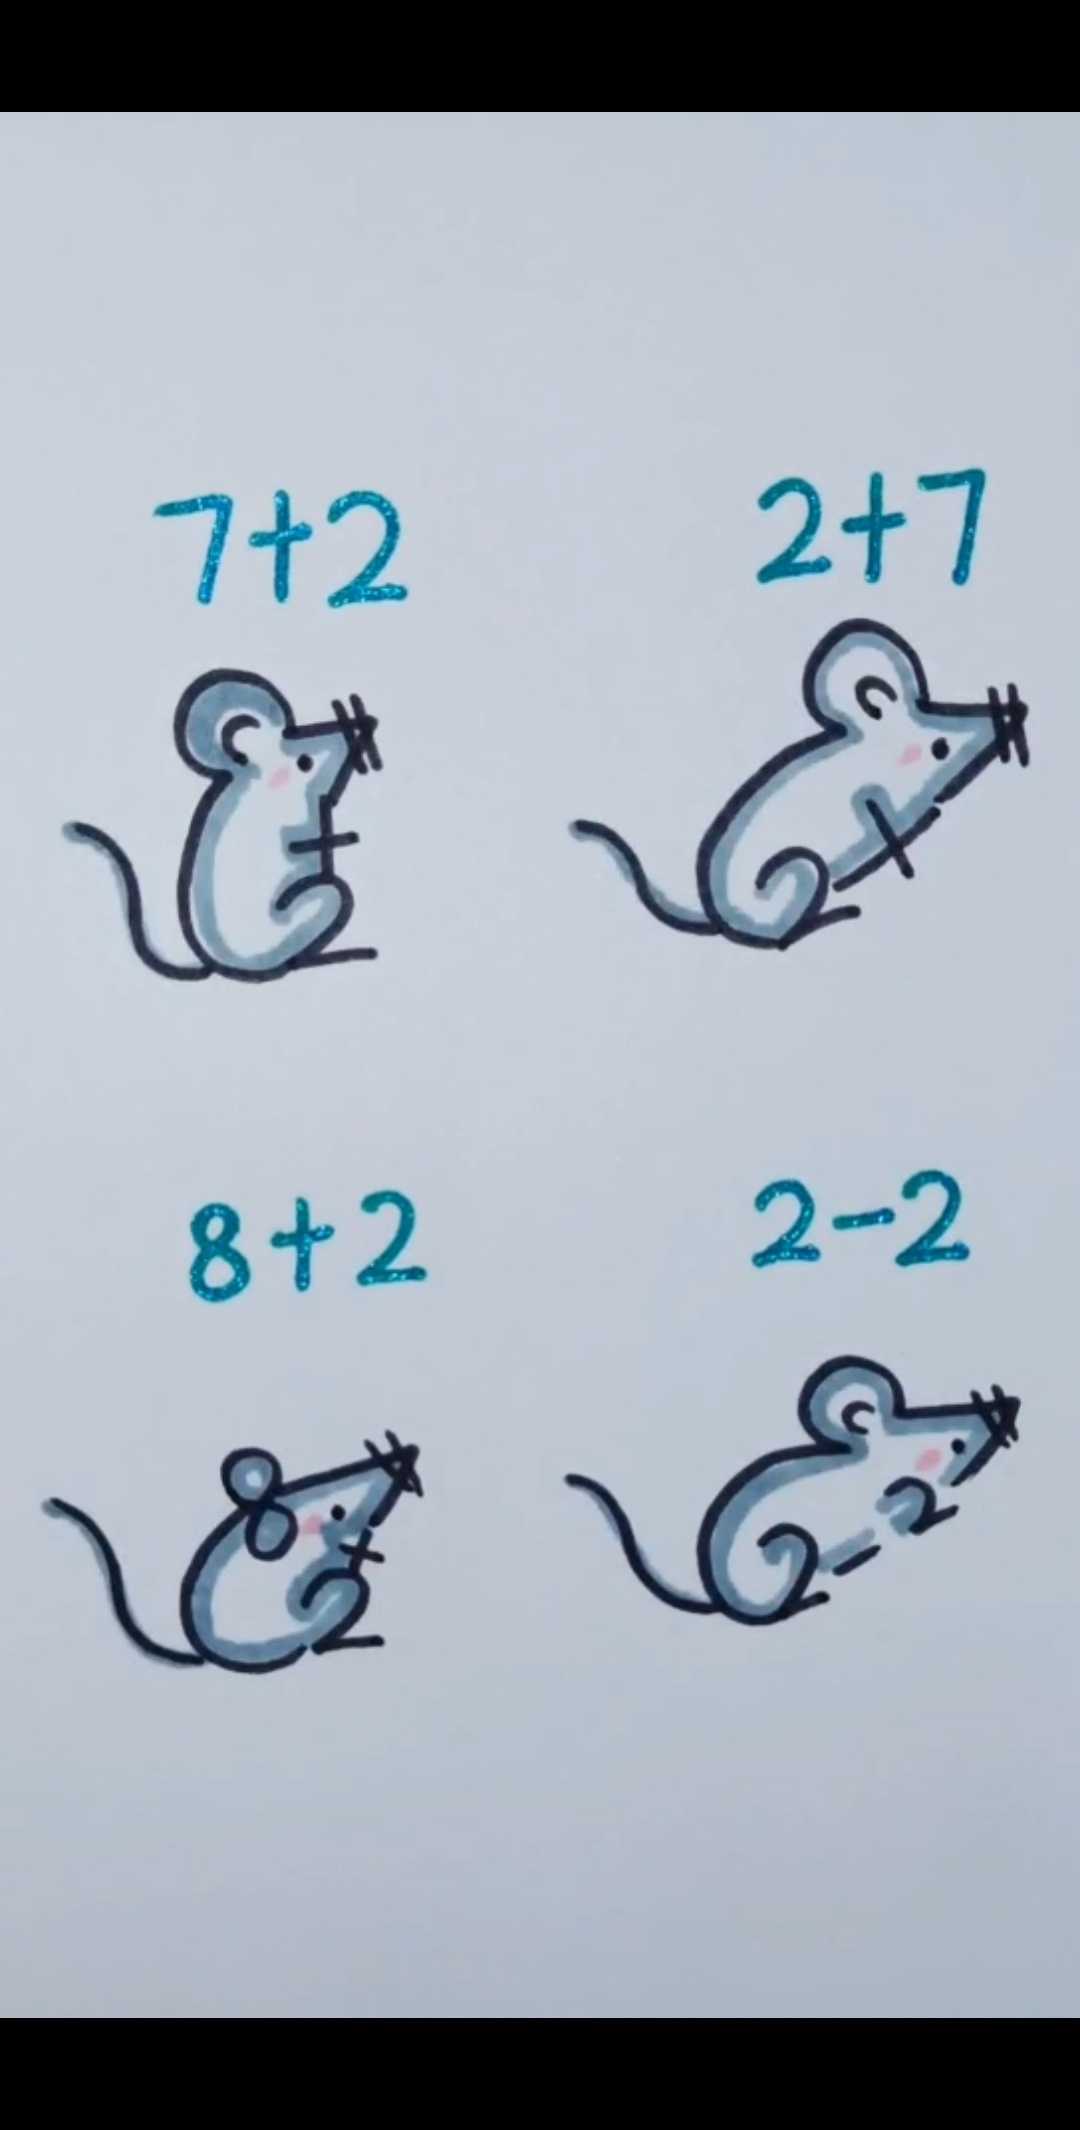 老鼠数字画法图片图片